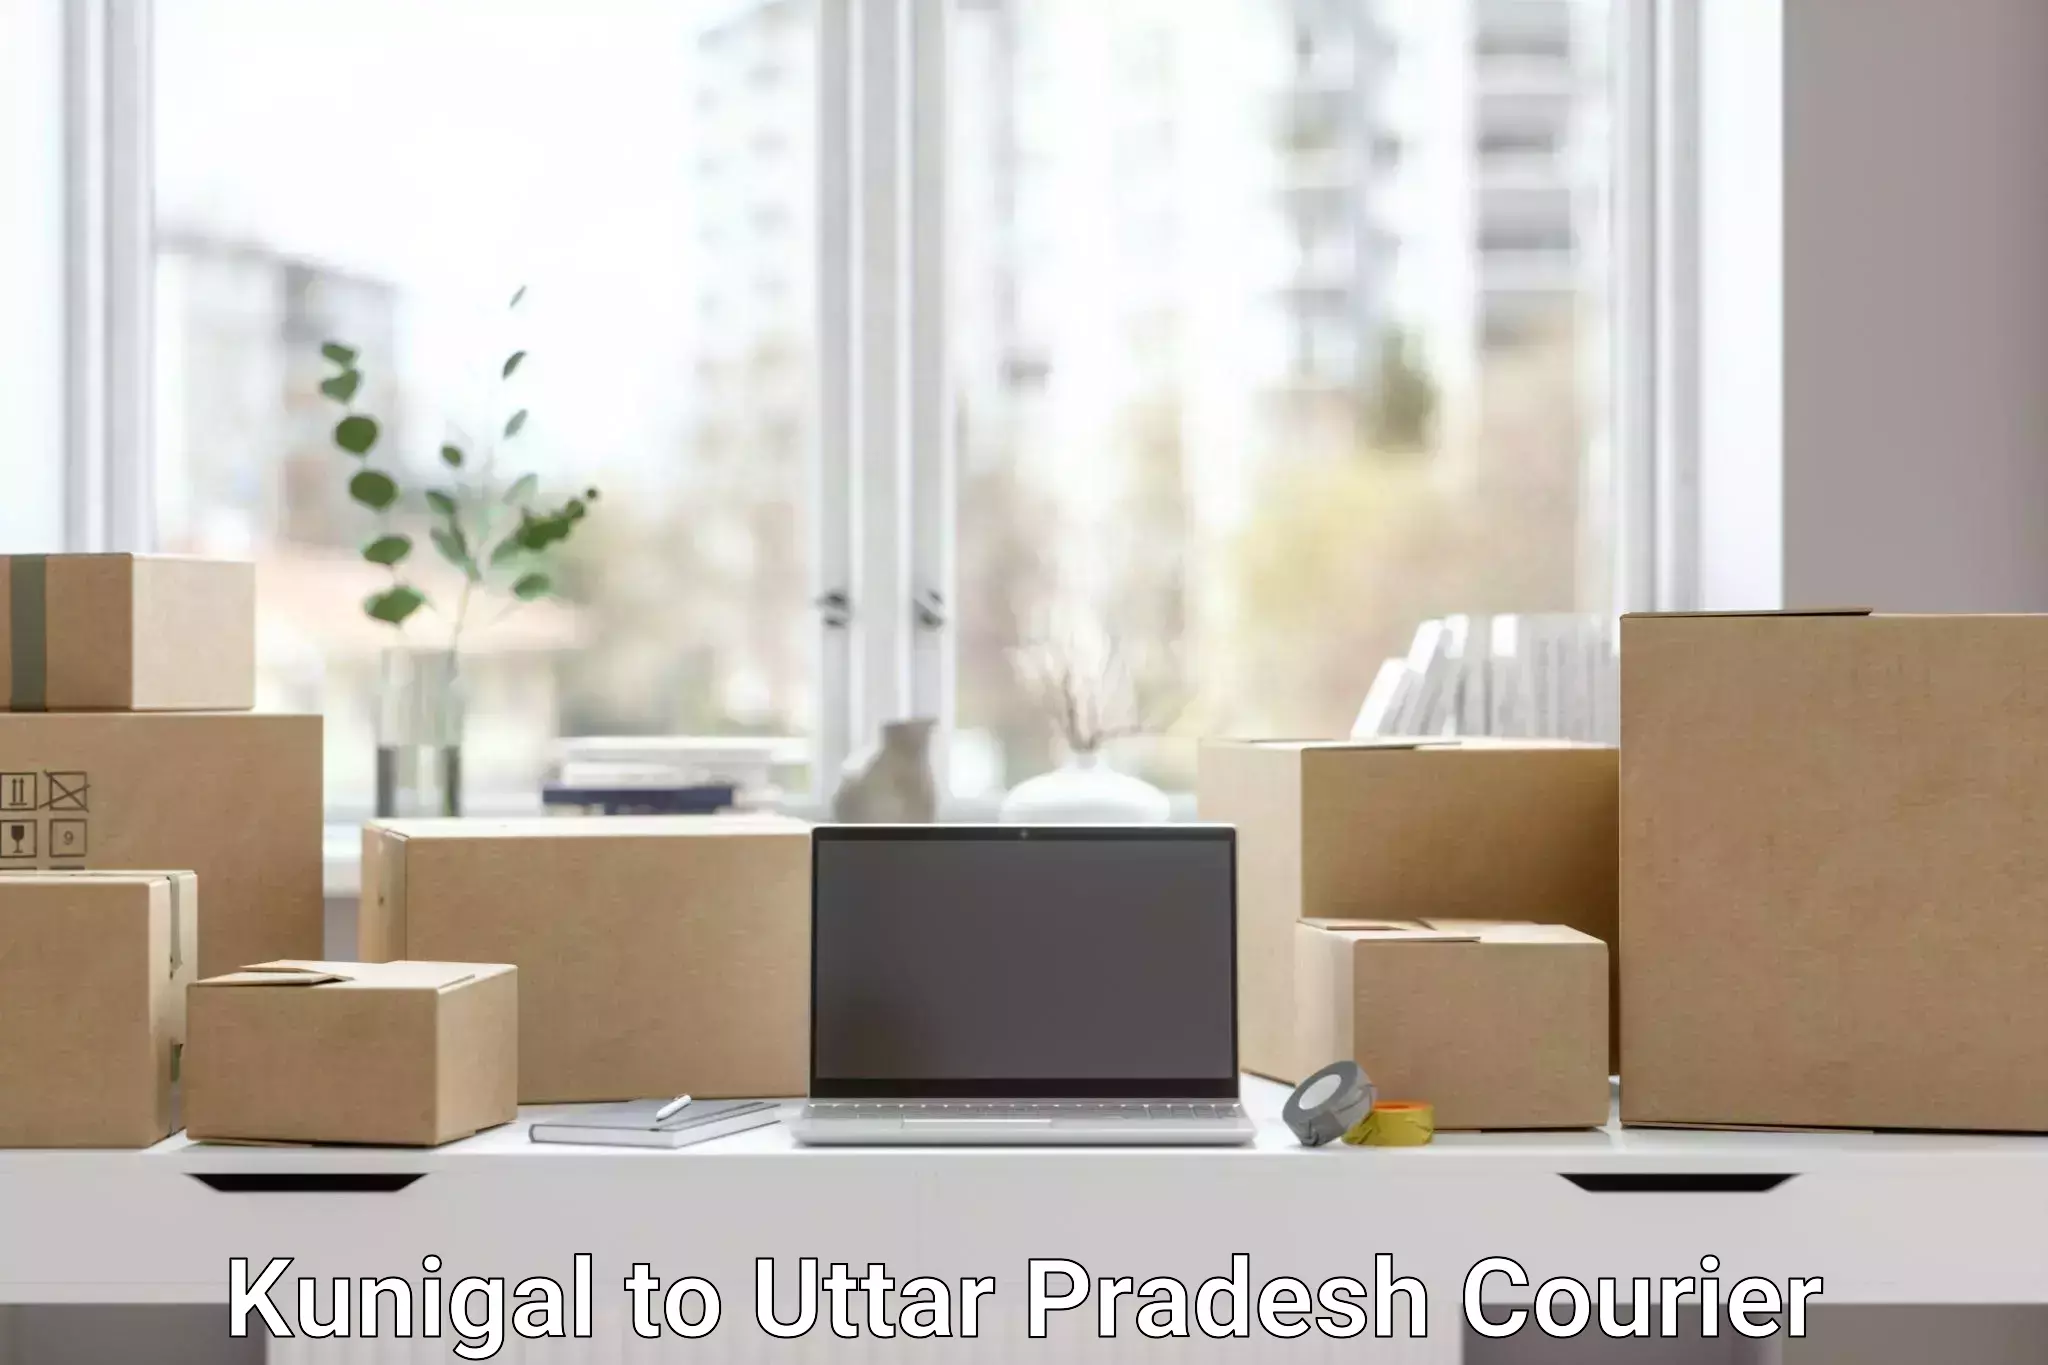 High-capacity parcel service in Kunigal to Uttar Pradesh